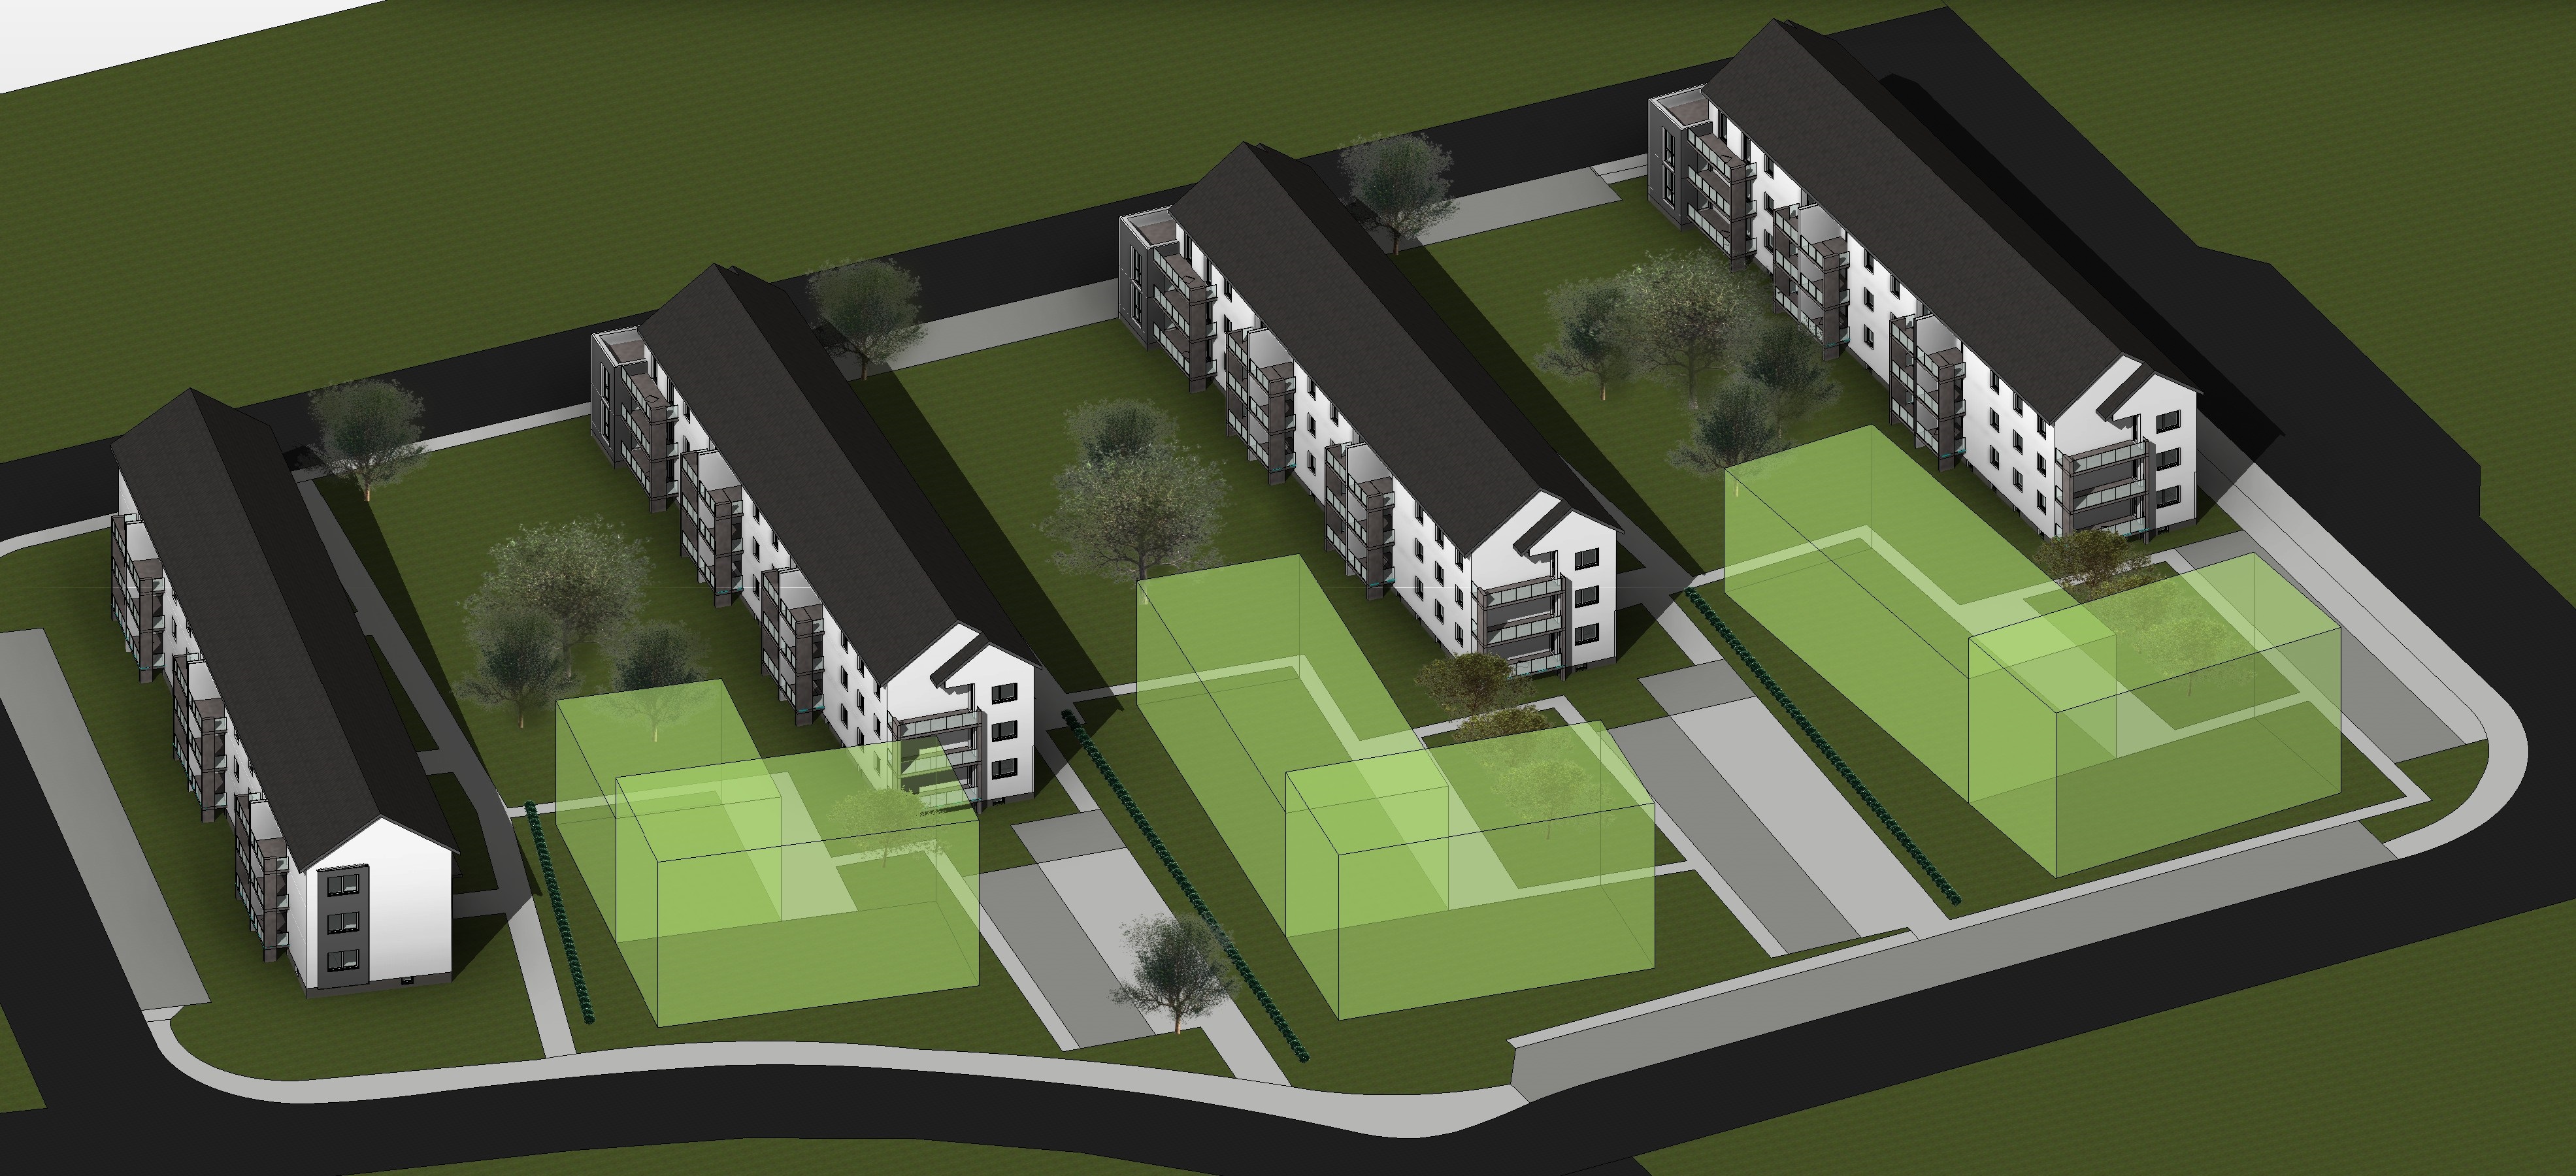 Visualisierung des zukünftigen Wohnprojektes "Nordring"